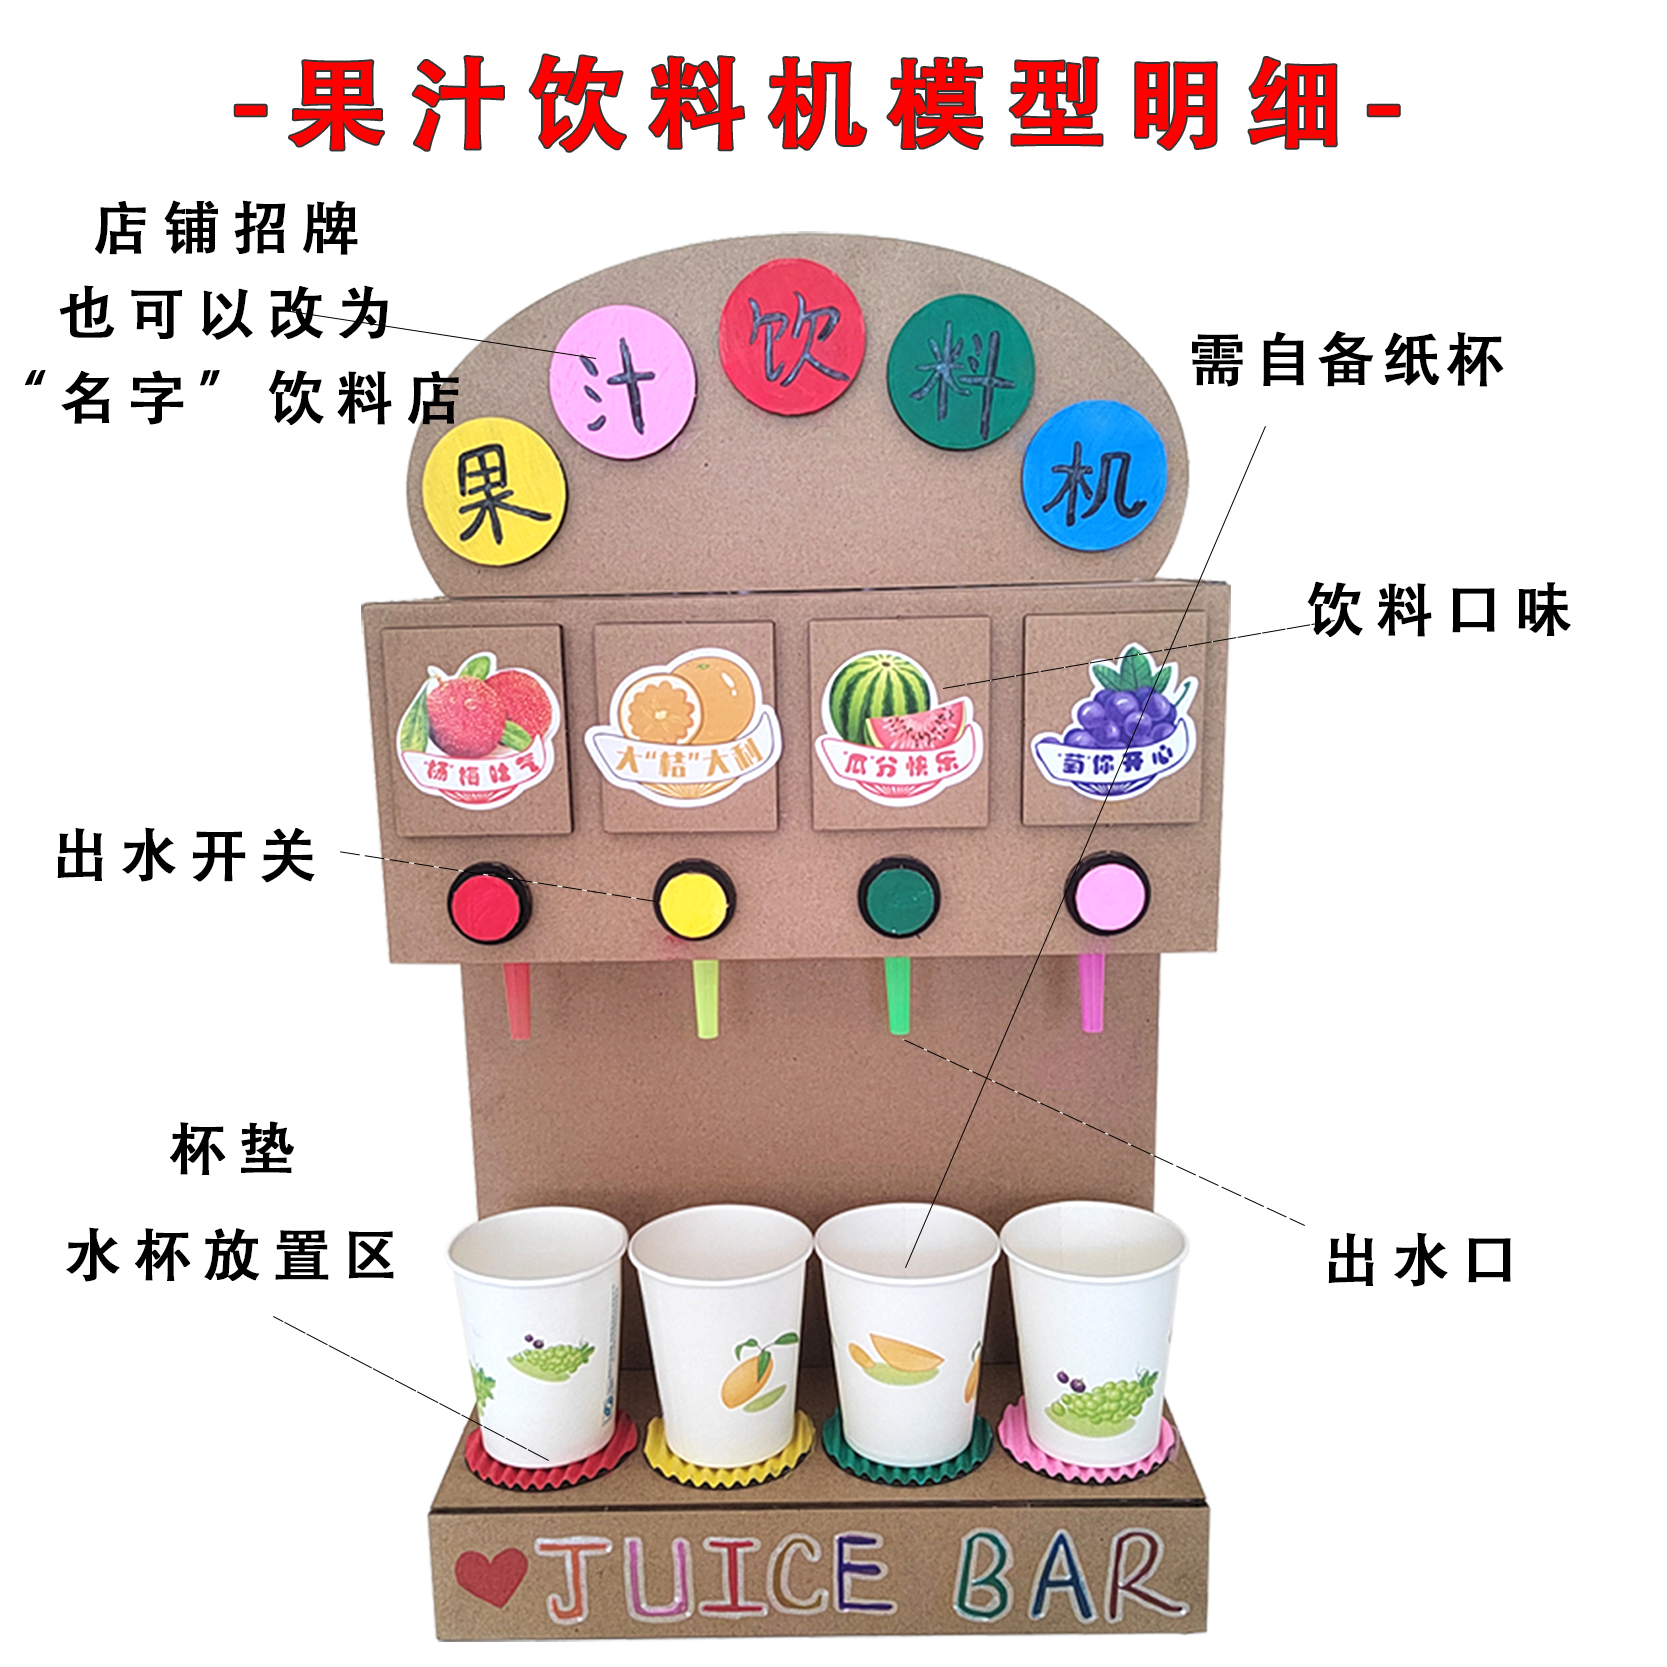 娃娃家自制果汁饮料机模型幼儿园女孩diy手工纸板环保饮水机玩具-图1